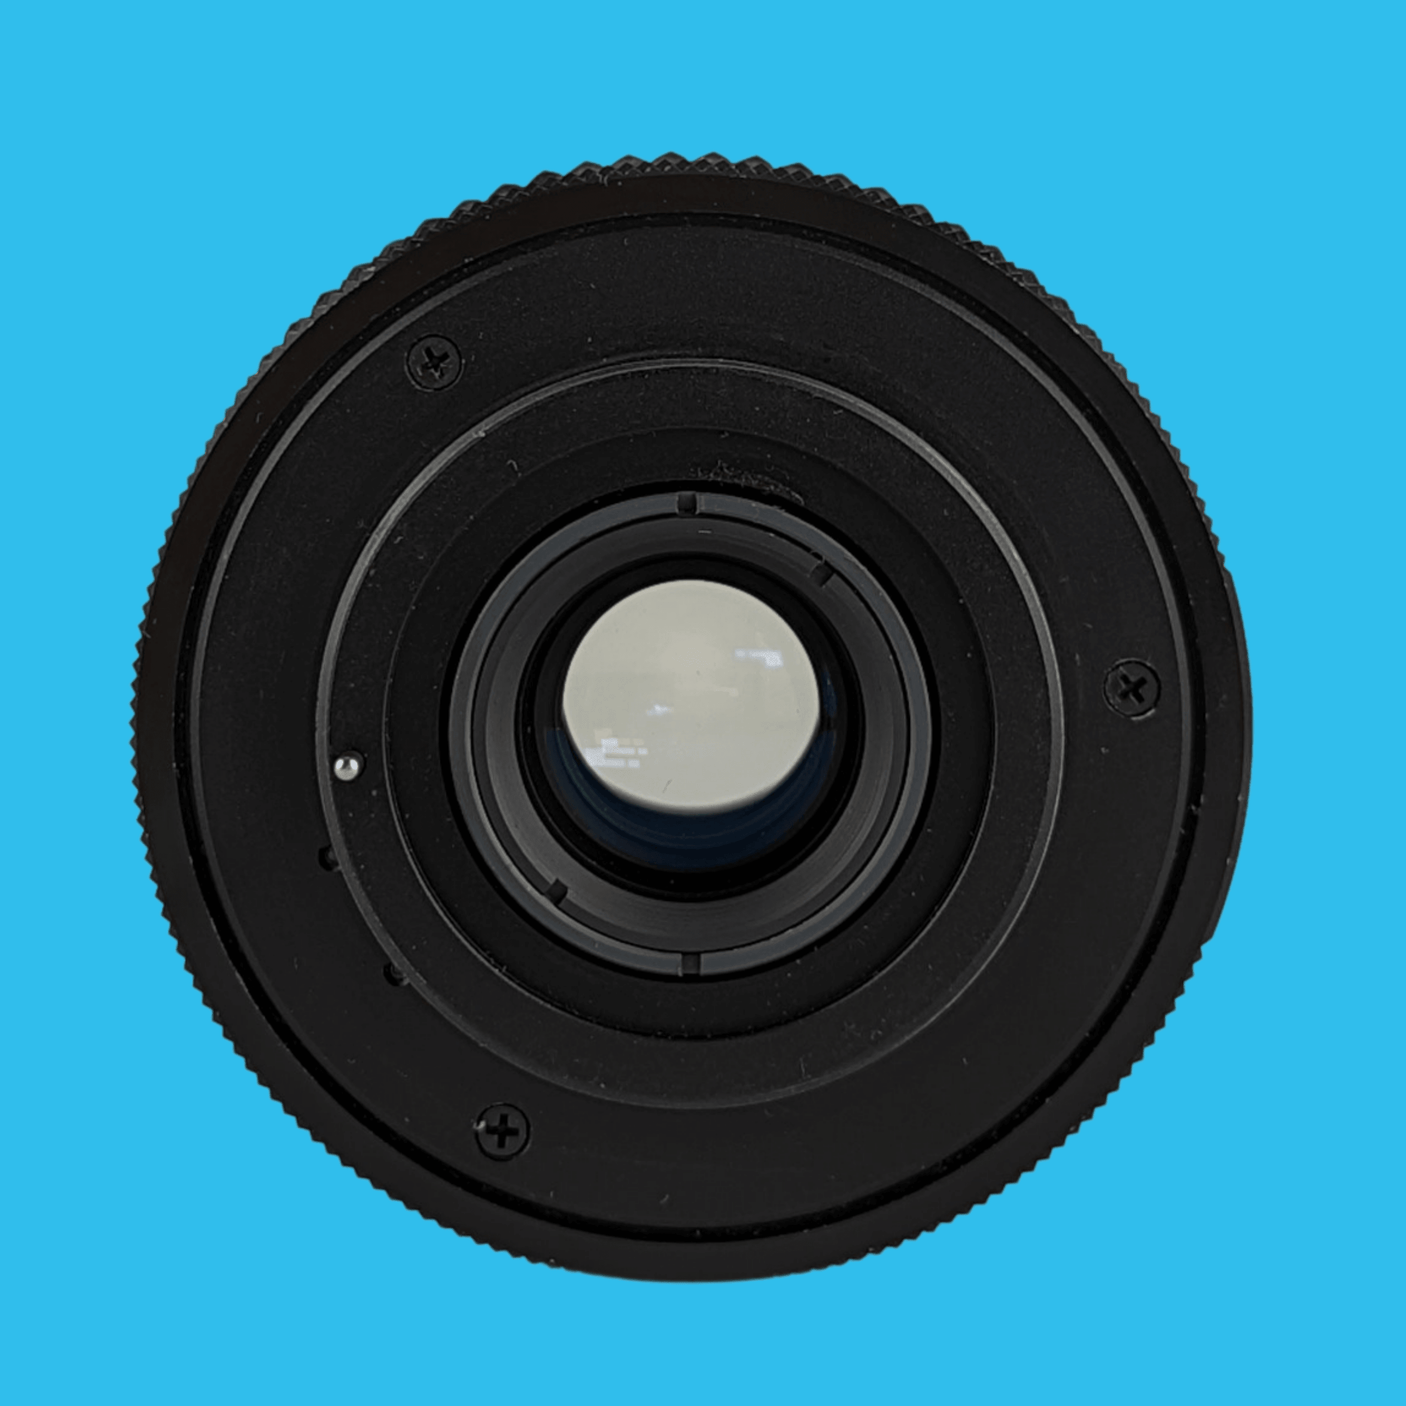 Hanimex MC Zoom 80mm-200mm f/4.5 Camera Lens